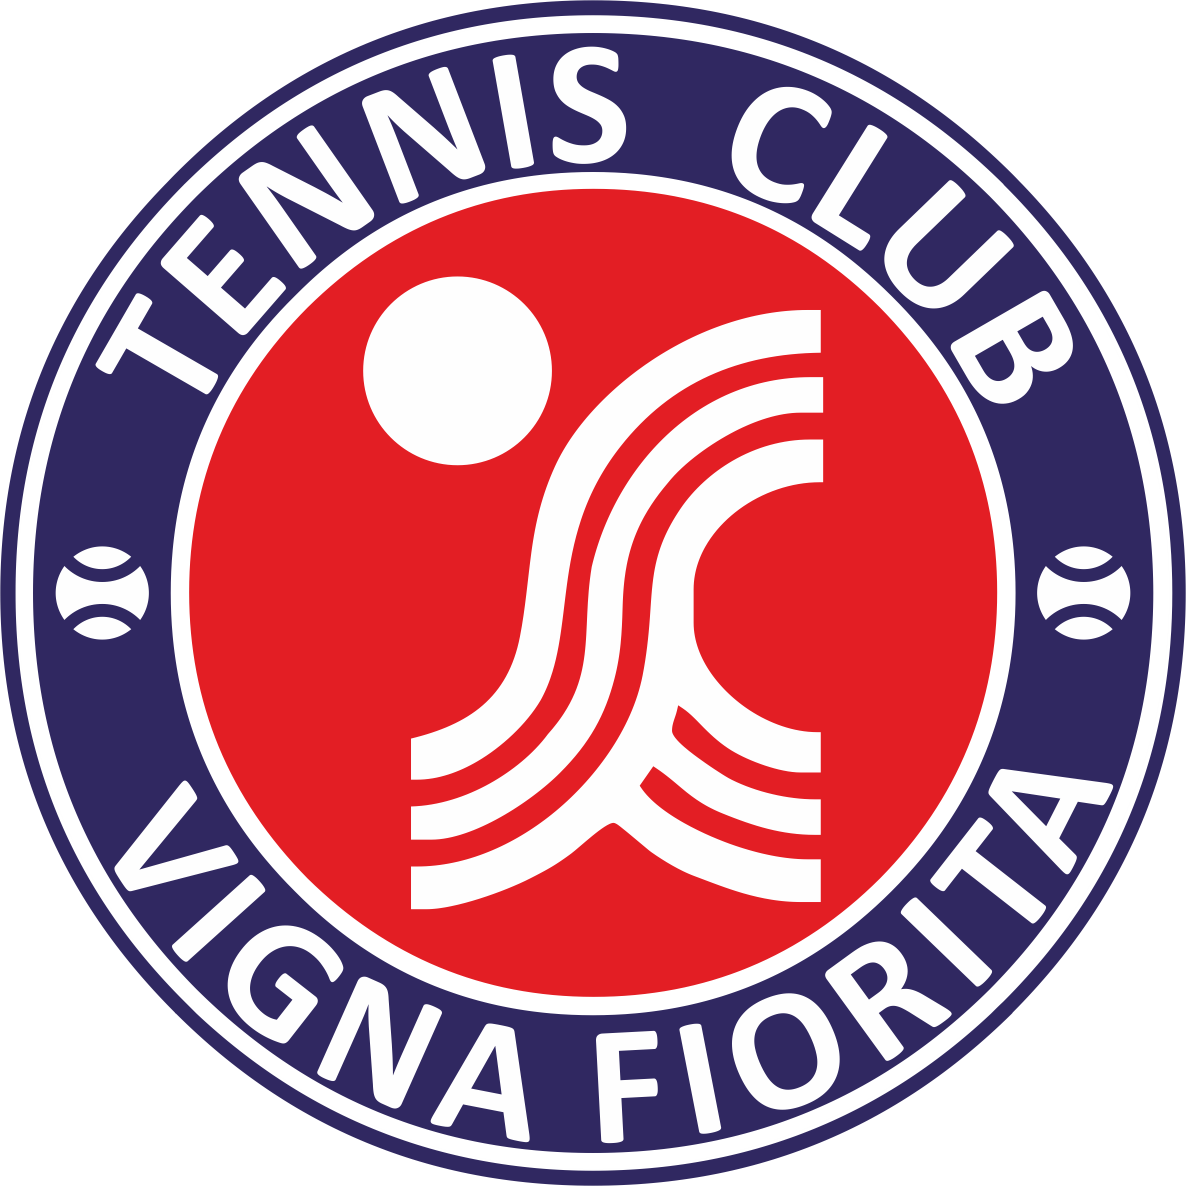 Tennis Club Vigna Fiorita